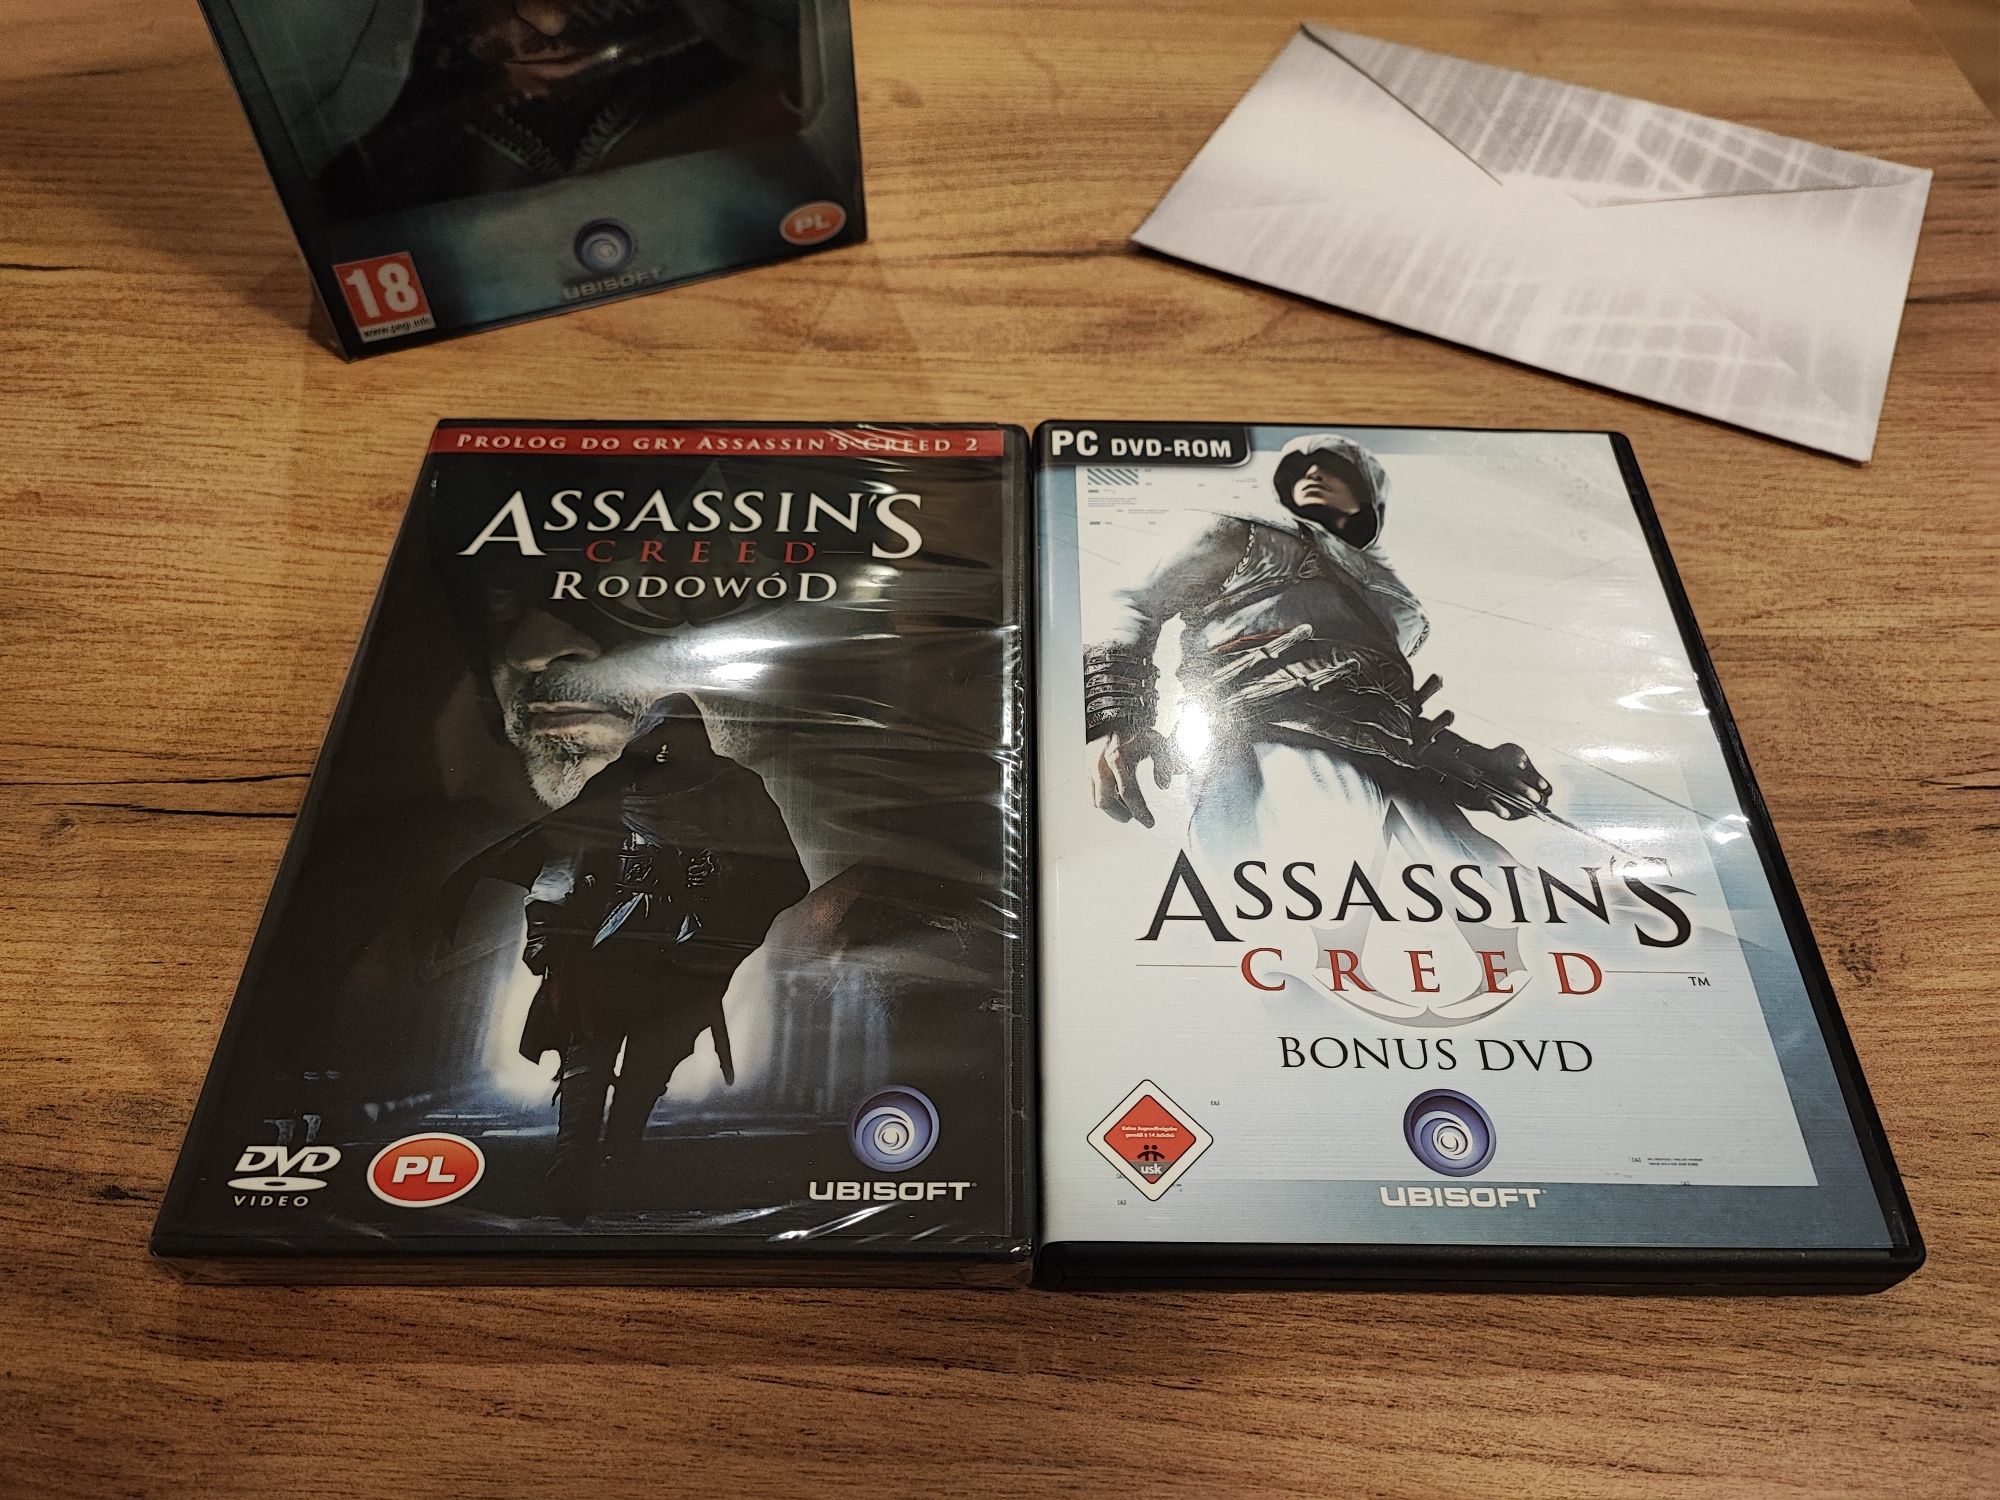 Assassin's Creed Brotherhood Kolekcjonerska Edycja Auditore